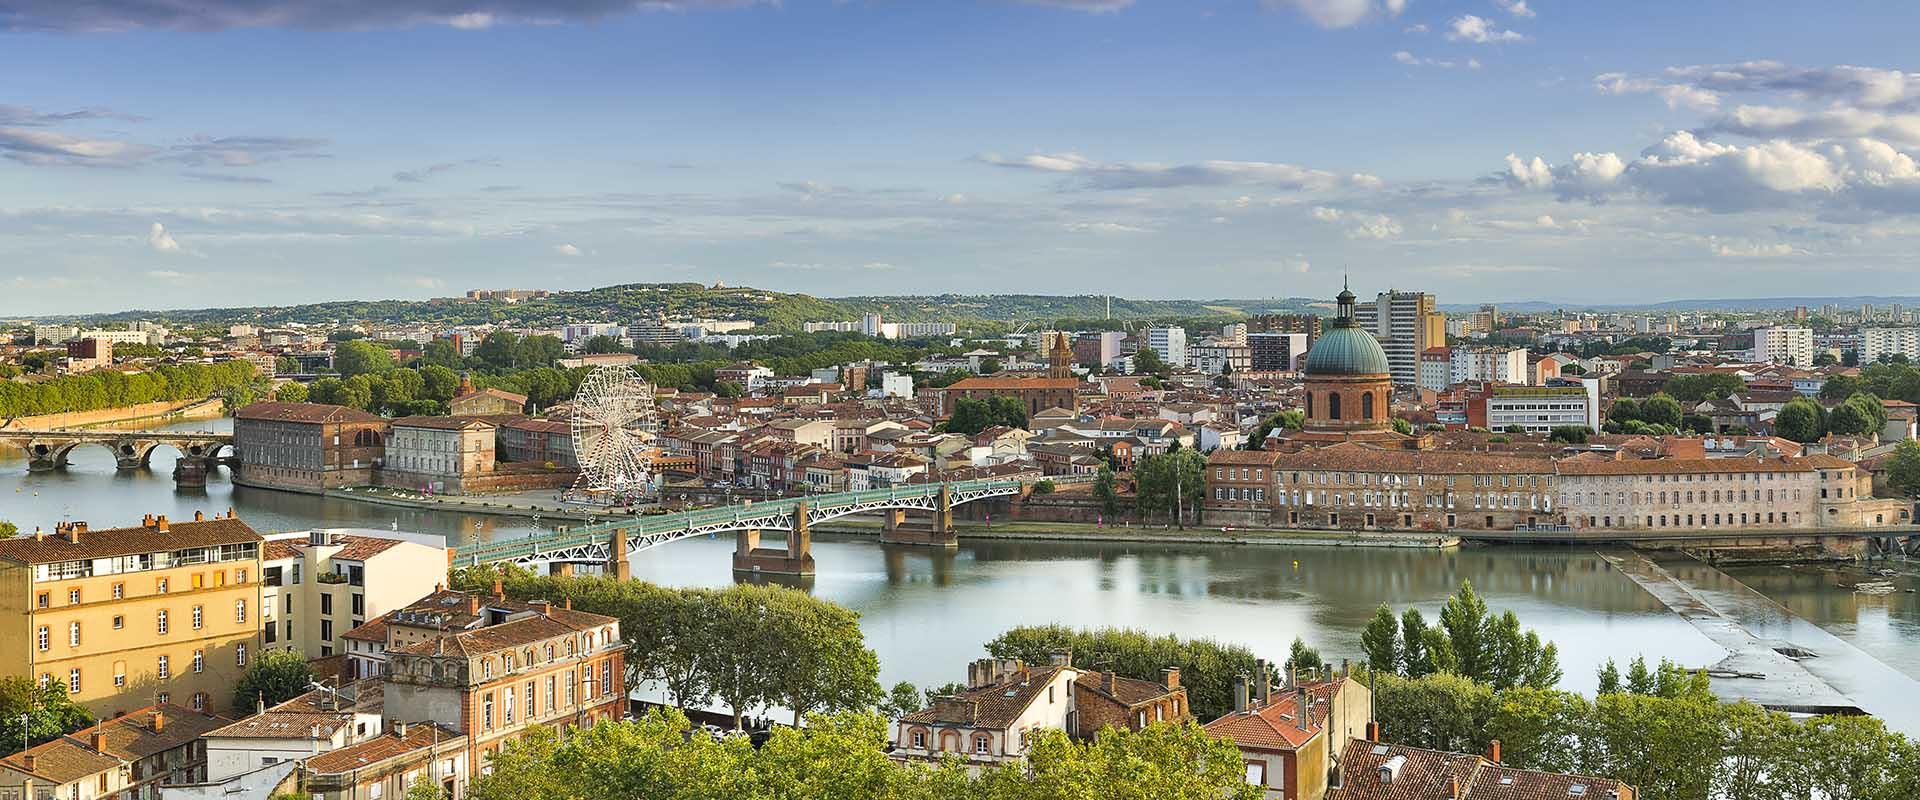 Destination cinéma, les bords de Garonne à Toulouse